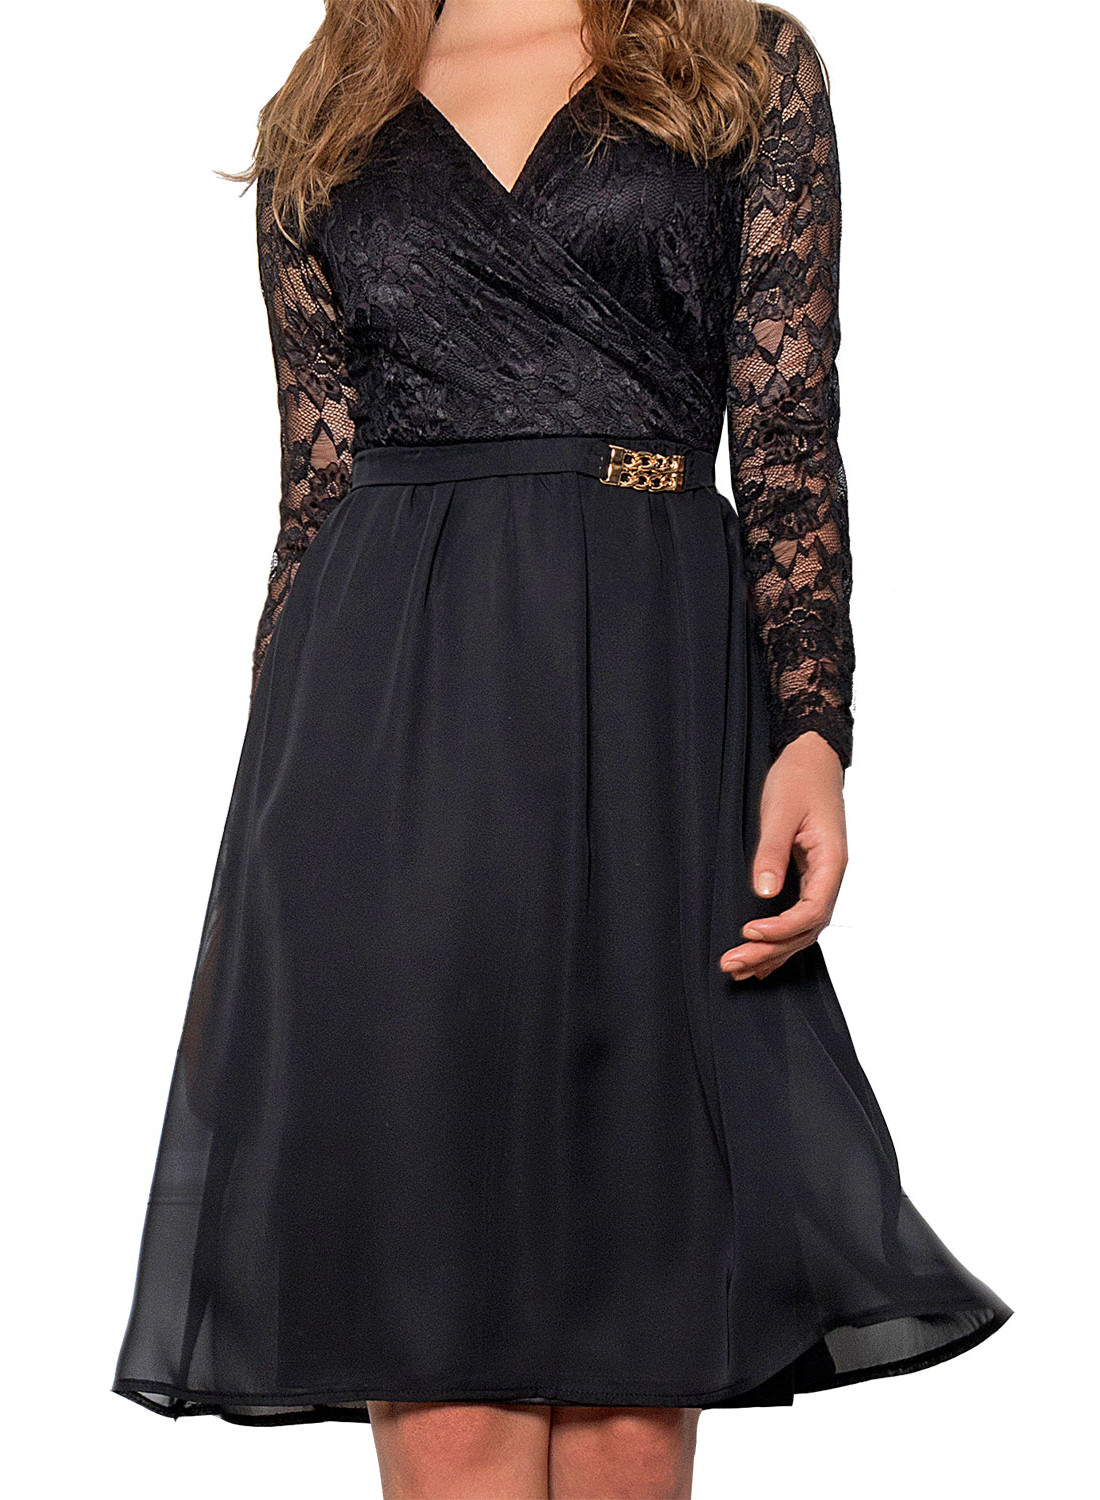 Μαύρο αέρινο φόρεμα με δαντέλα